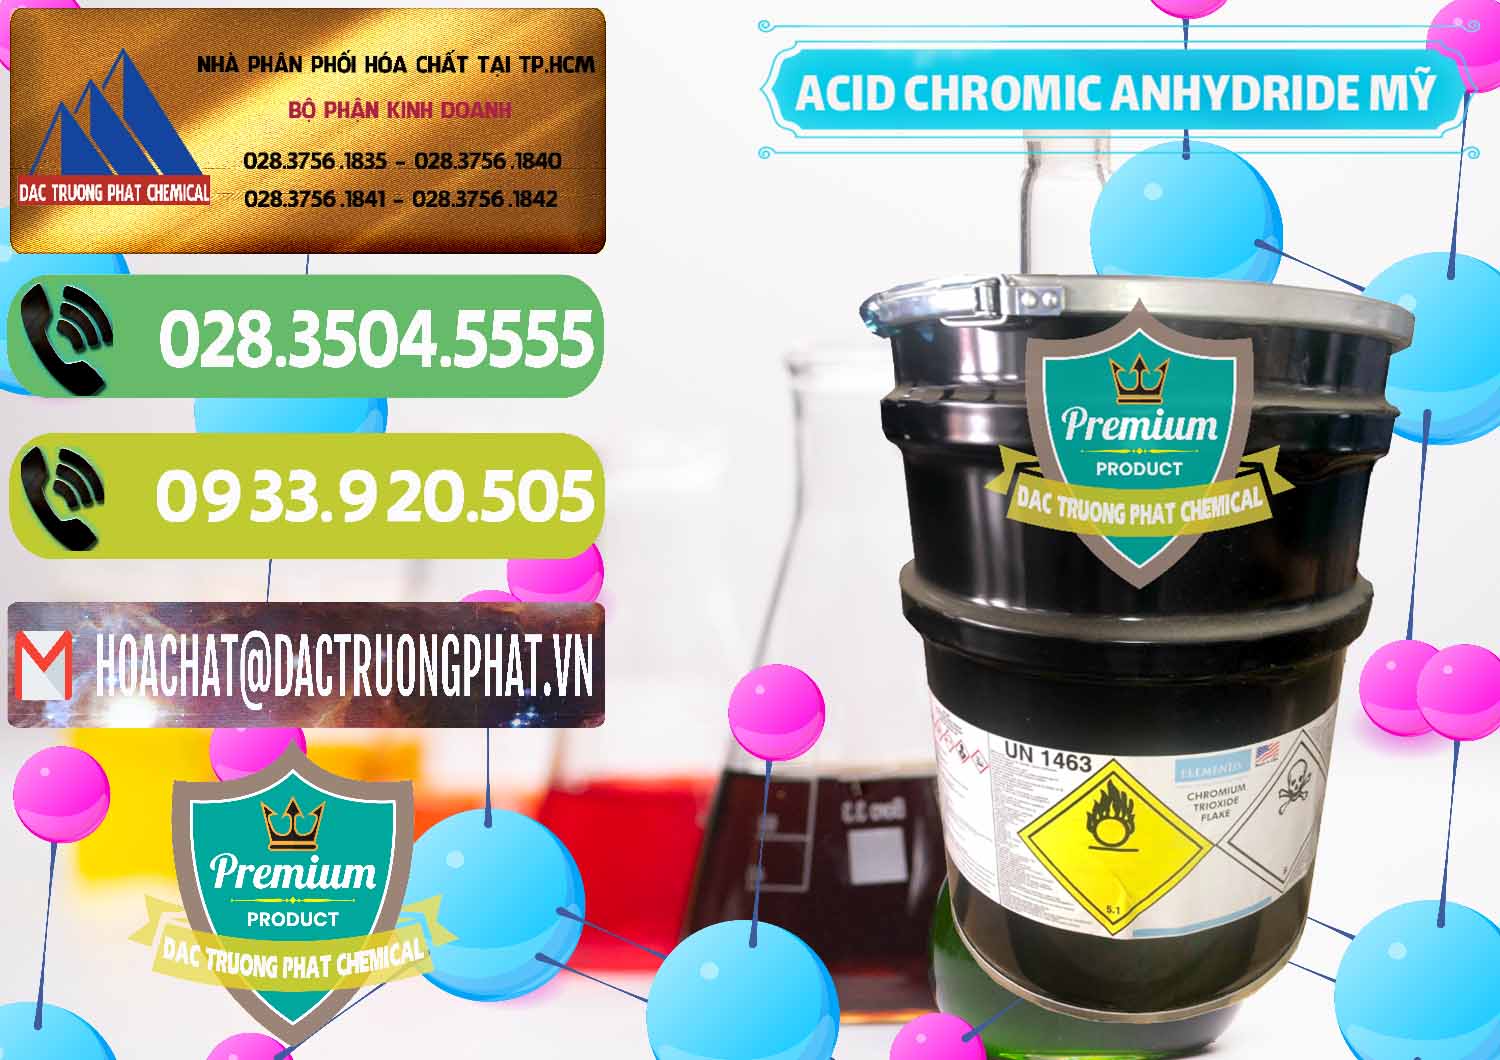 Chuyên bán _ cung cấp Acid Chromic Anhydride - Cromic CRO3 USA Mỹ - 0364 - Cung cấp hóa chất tại TP.HCM - hoachatmientay.vn